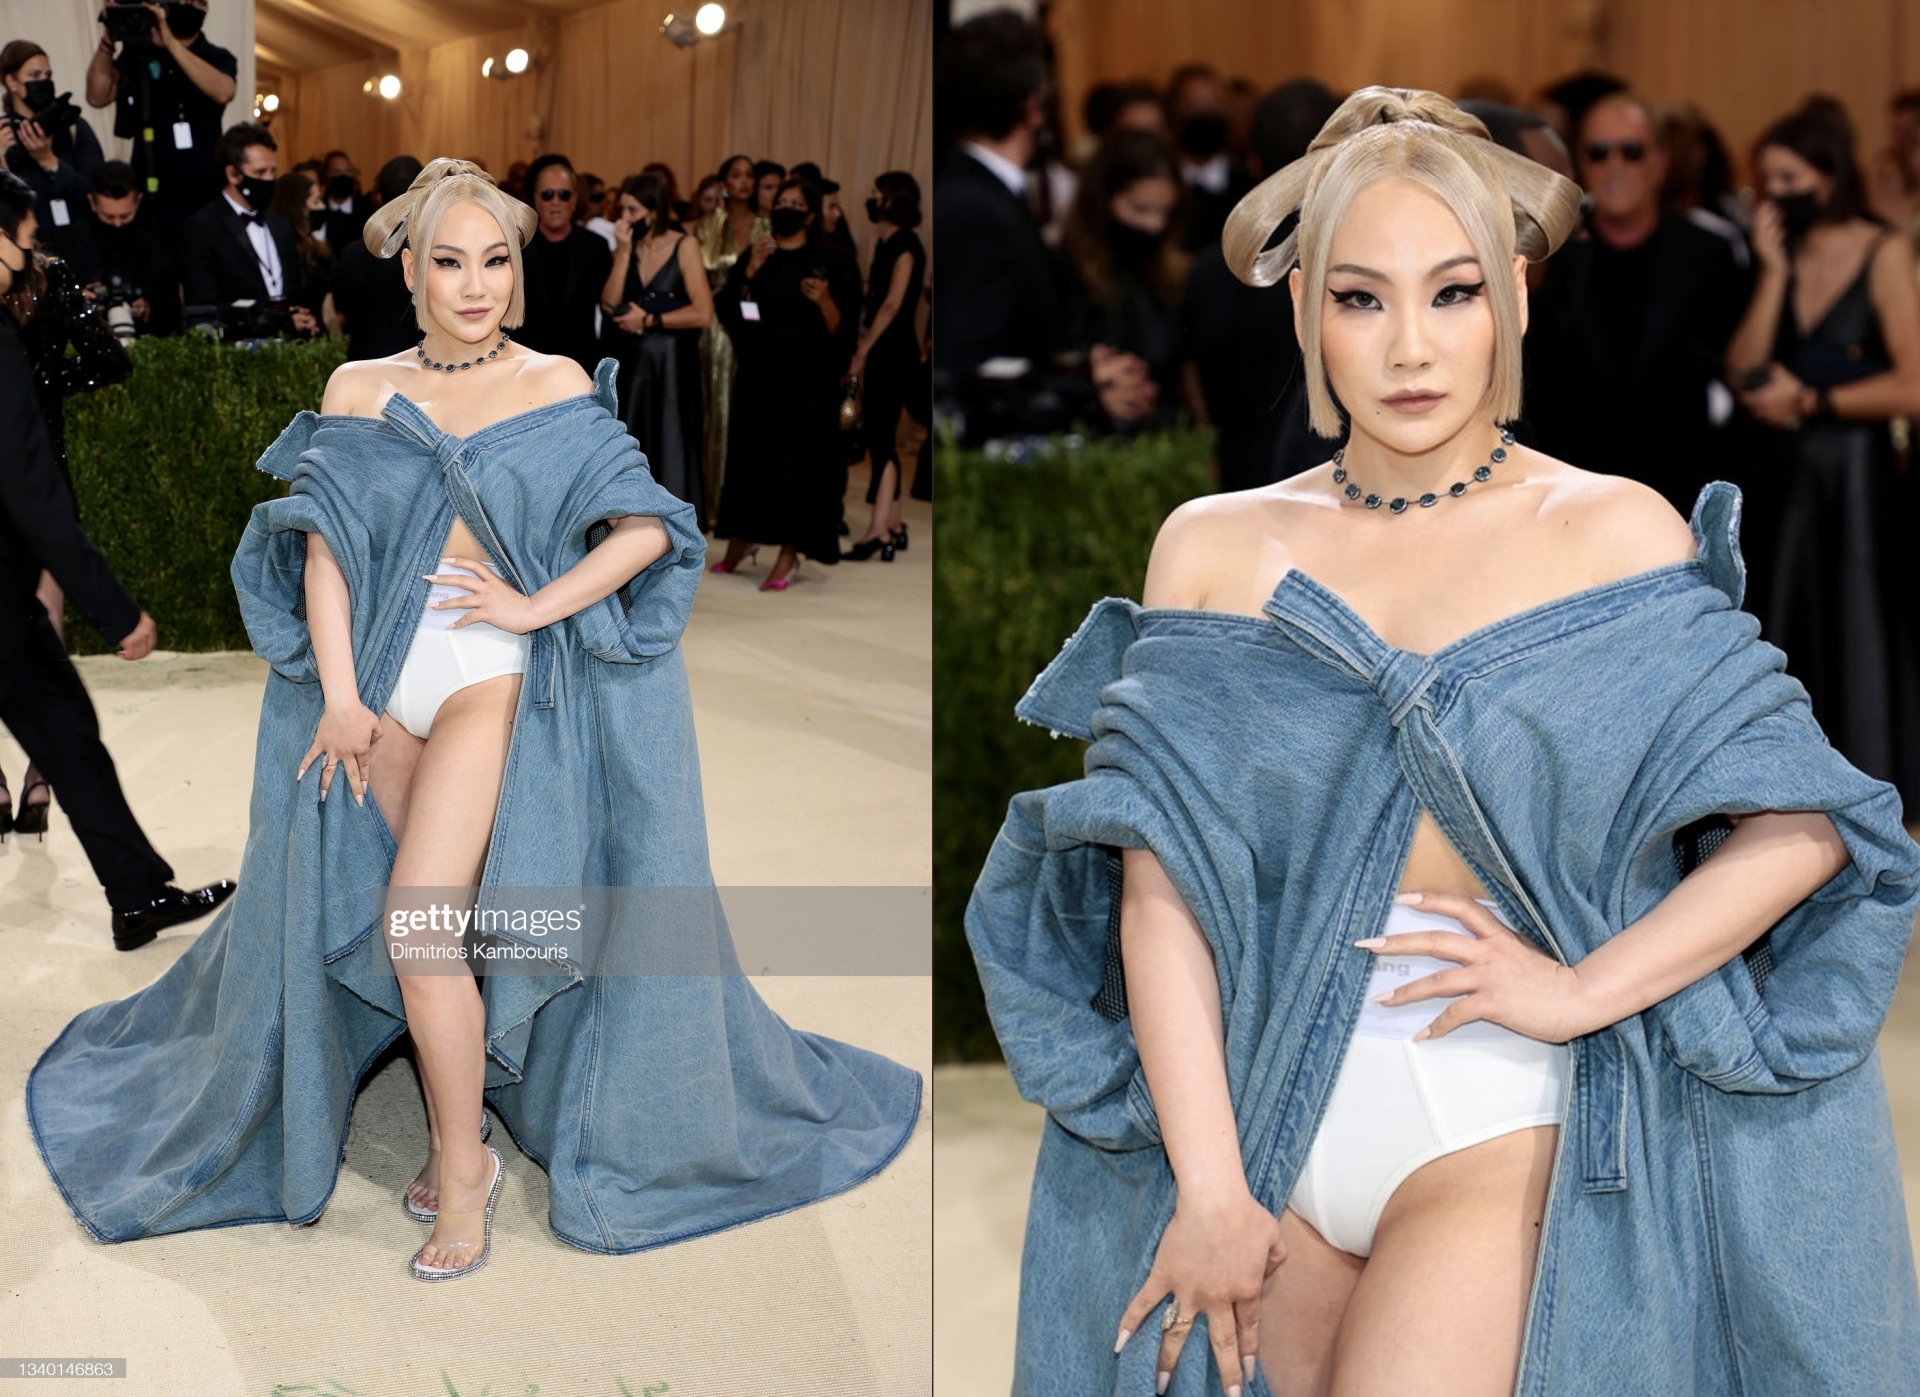 CL thu hút ánh nhìn với thiết kế áo choàng táo bạo, make-up lạ mắt, không hổ danh 'quái nữ' nhà YG một thời.